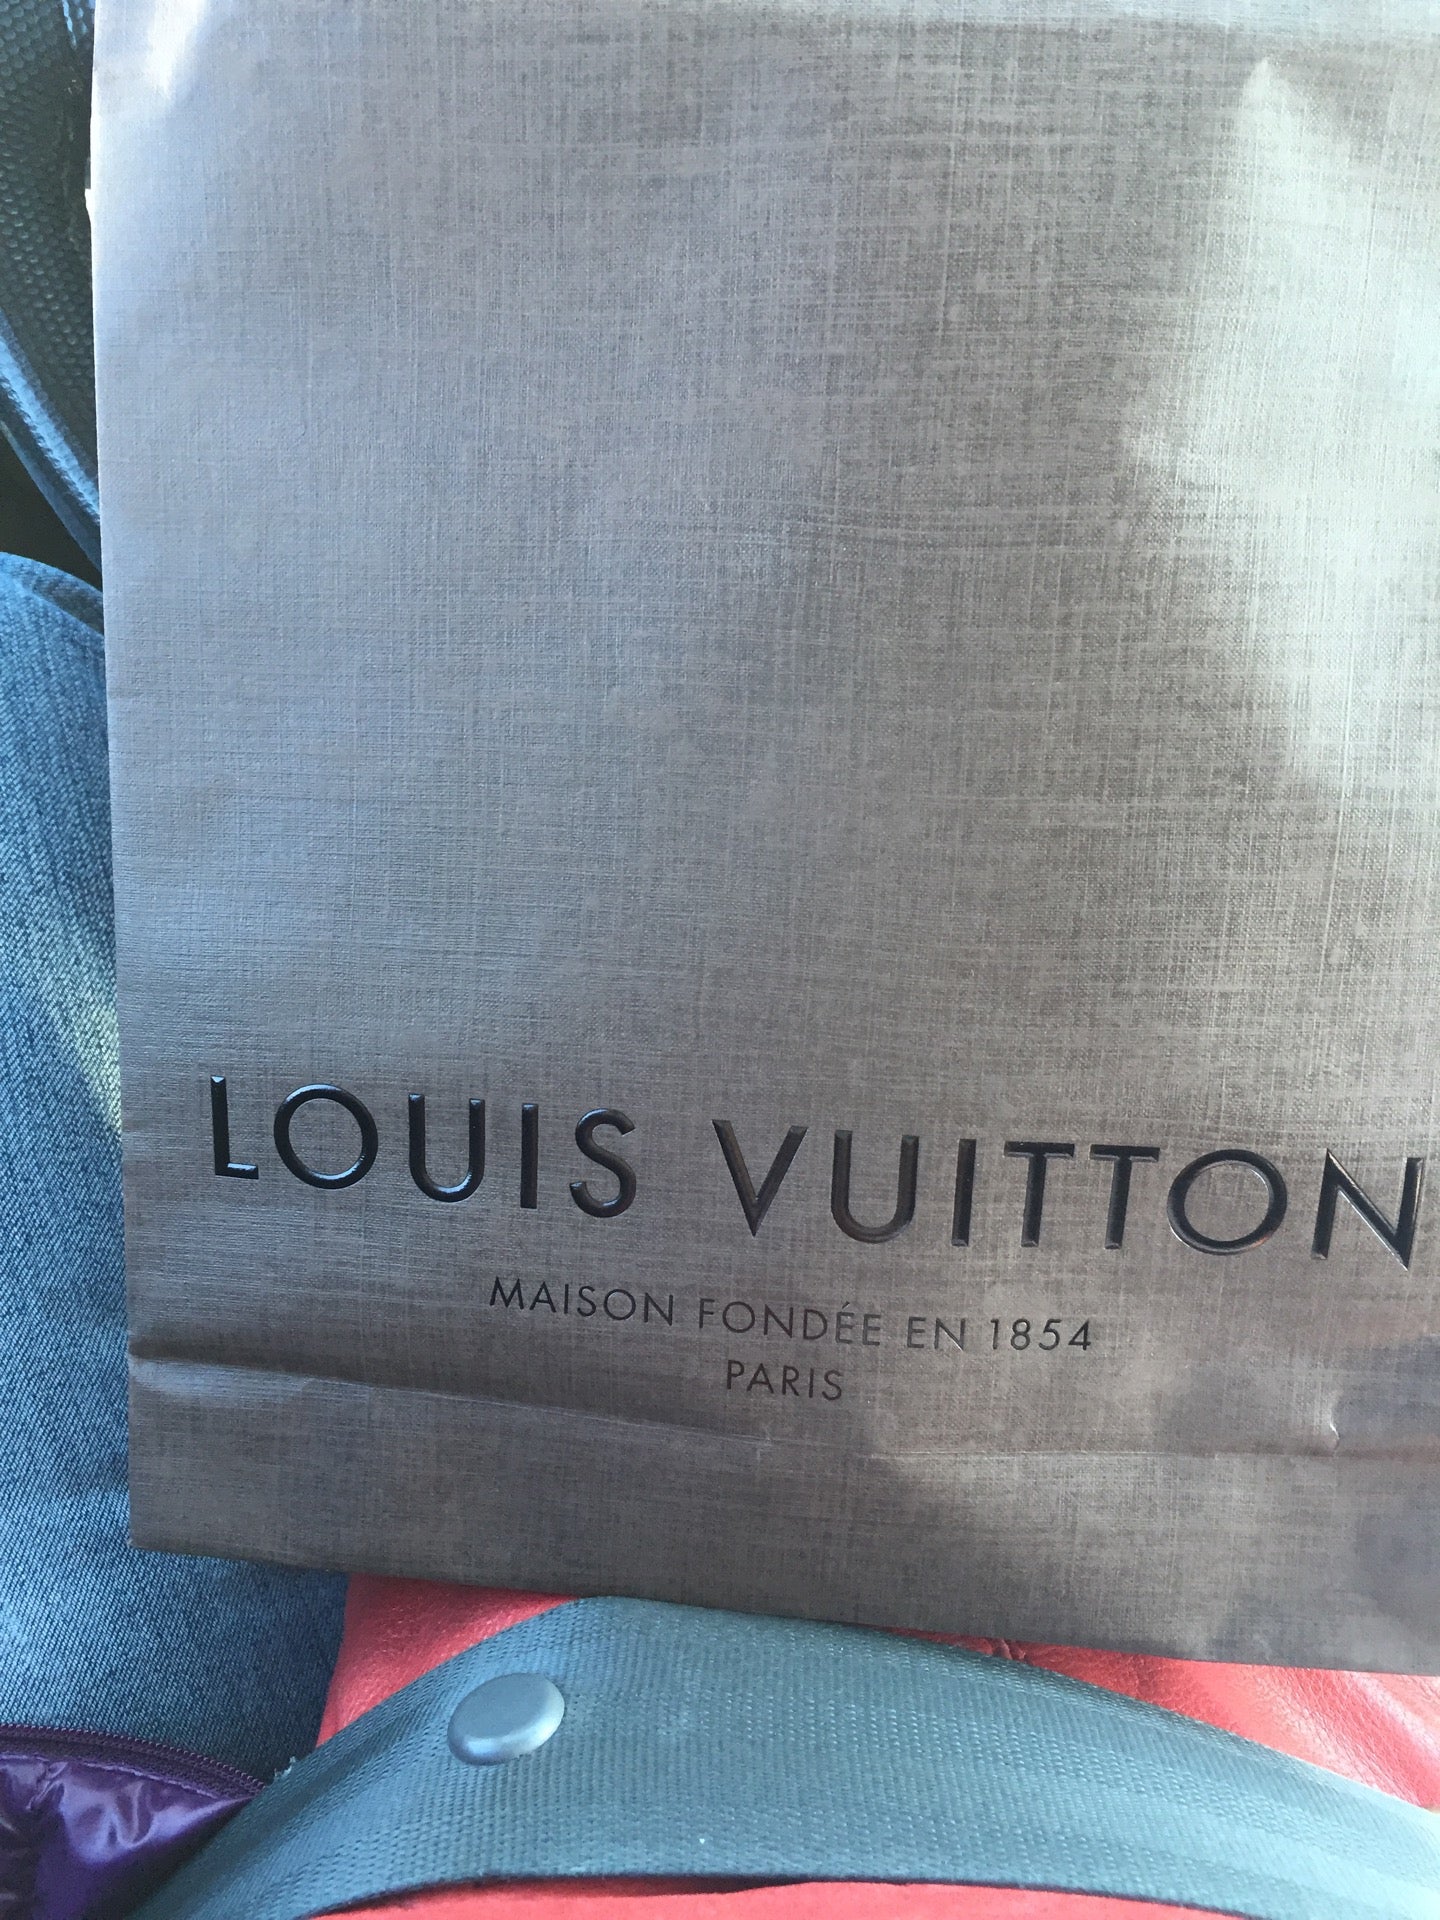 Louis Vuitton - 129 Summit Blvd